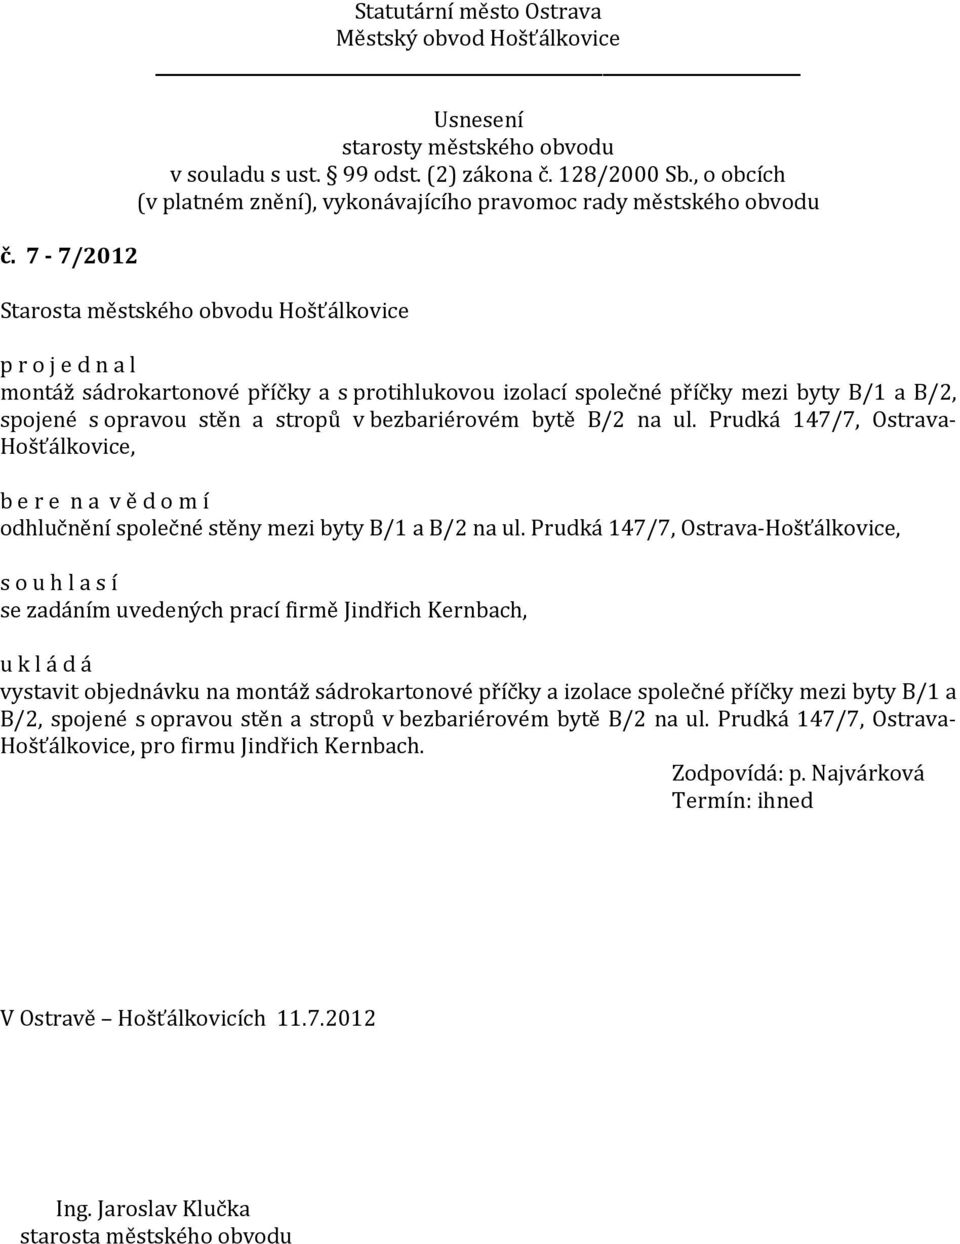 Prudká 147/7, Ostrava-Hošťálkovice, se zadáním uvedených prací firmě Jindřich Kernbach, vystavit objednávku na montáž sádrokartonové příčky a izolace společné příčky